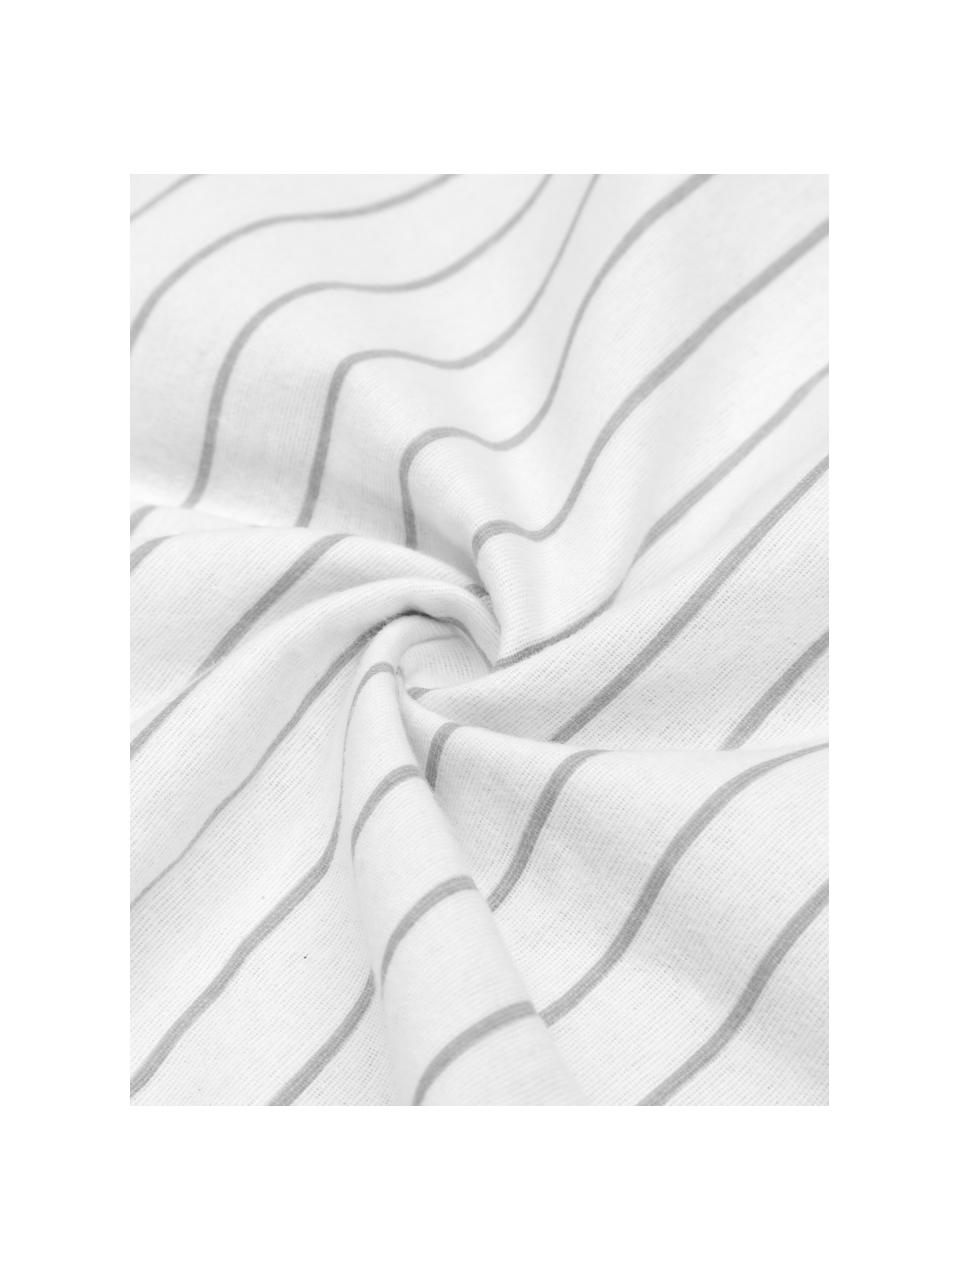 Flanell-Wendebettwäsche Talin mit Streifen, Webart: Flanell Flanell ist ein k, Grau, Weiß, 135 x 200 cm + 1 Kissen 80 x 80 cm